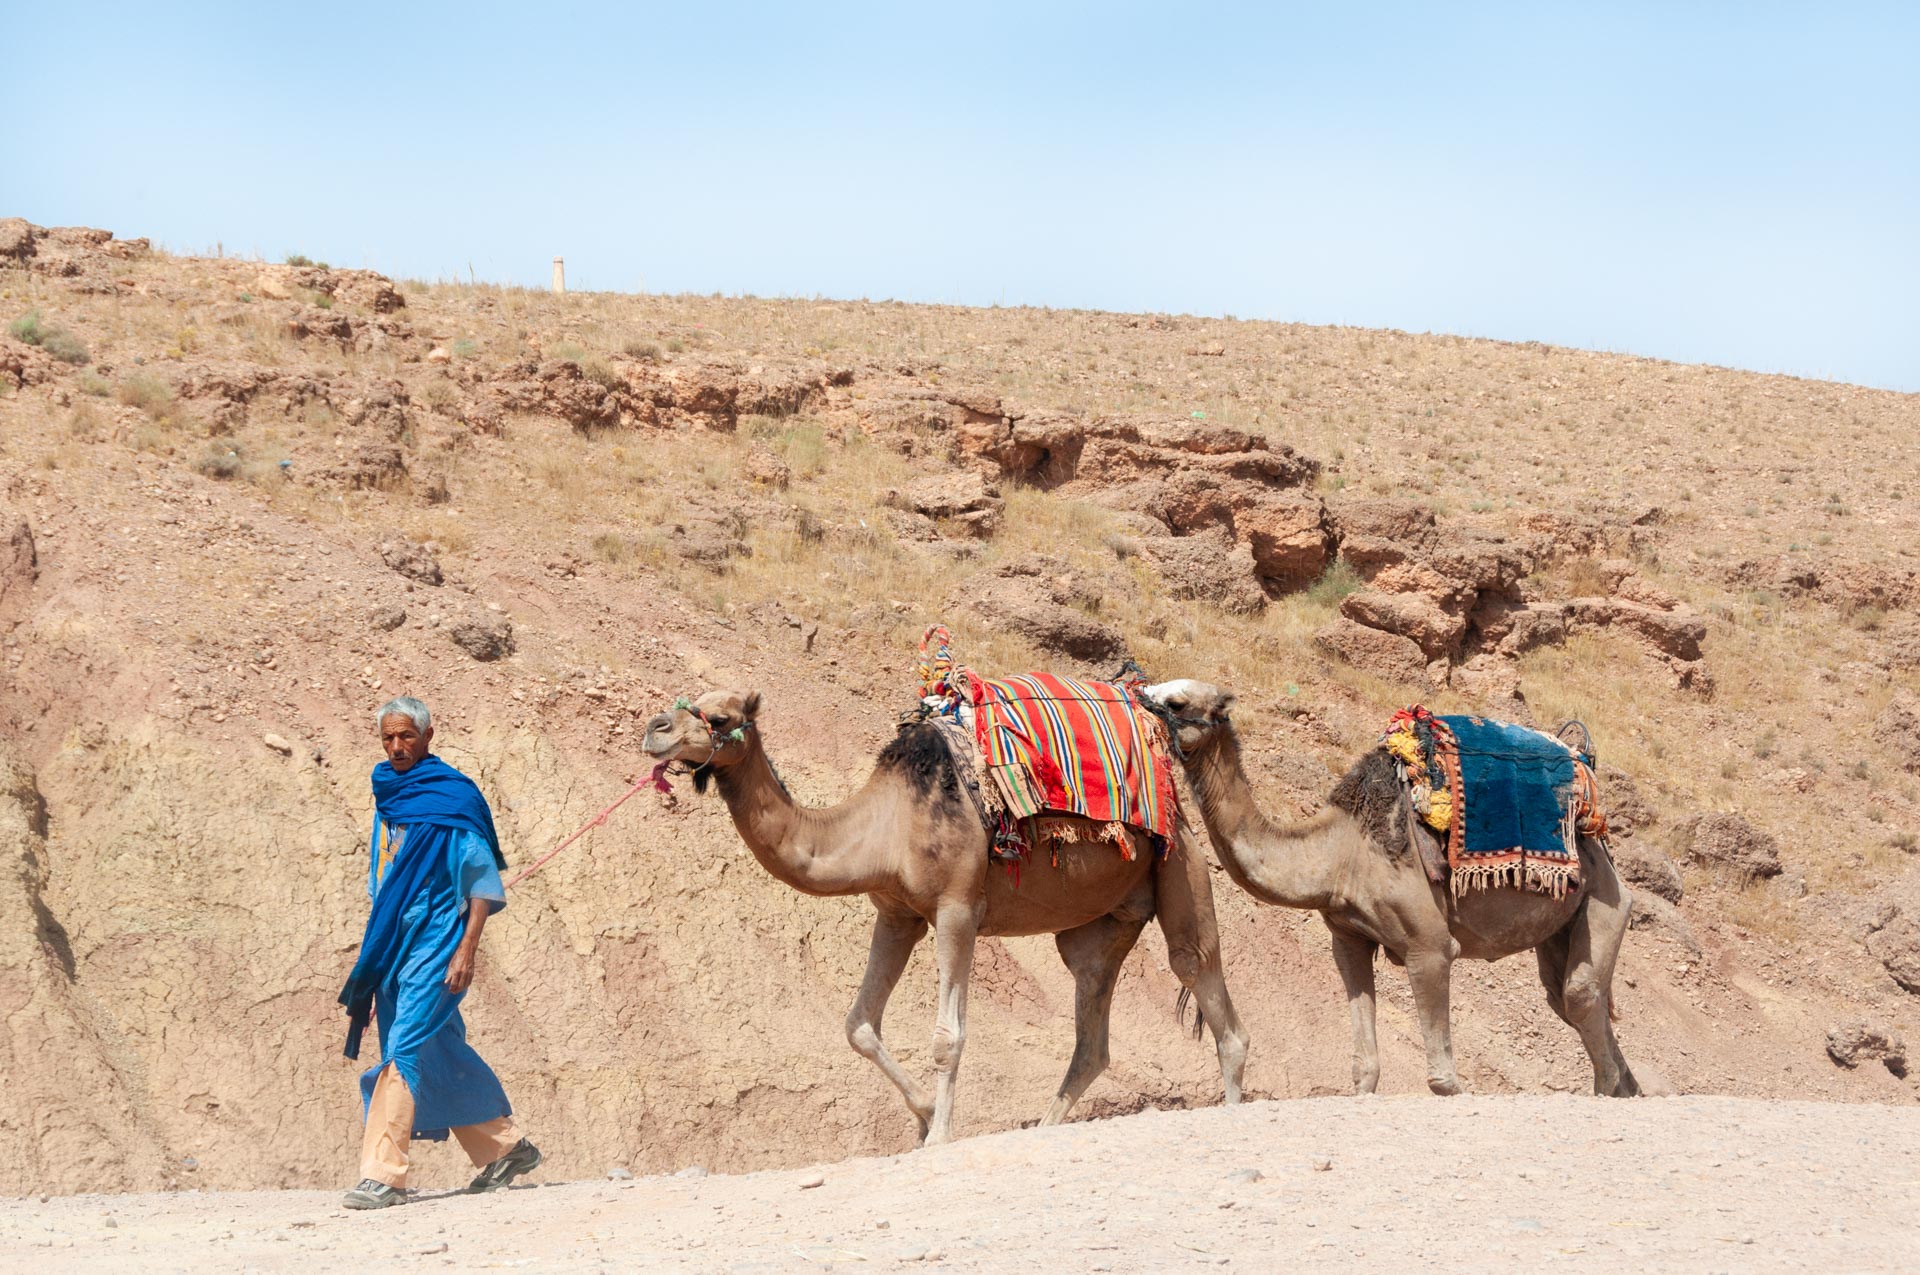 Strasse der Kasbahs in Marokko - Globetrotter Select